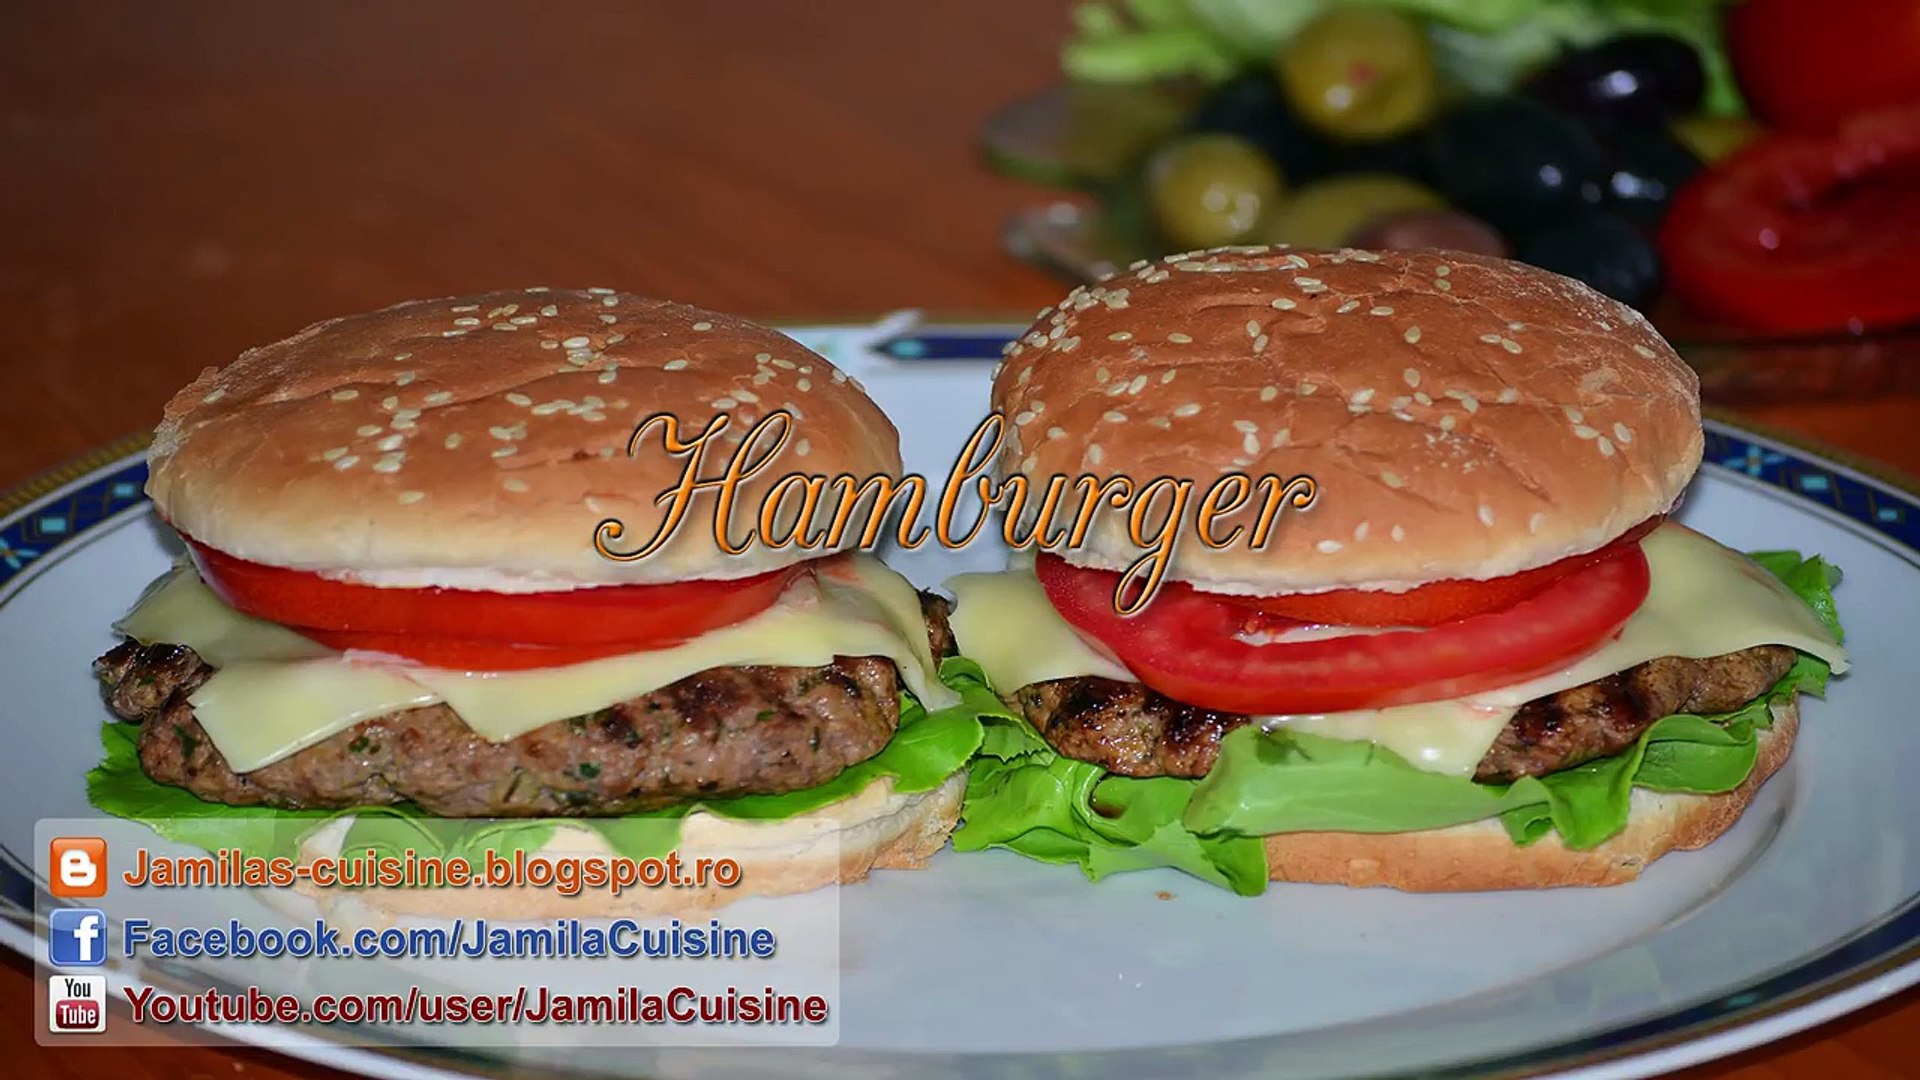 Reteta Hamburger Jamilacuisine Video Dailymotion